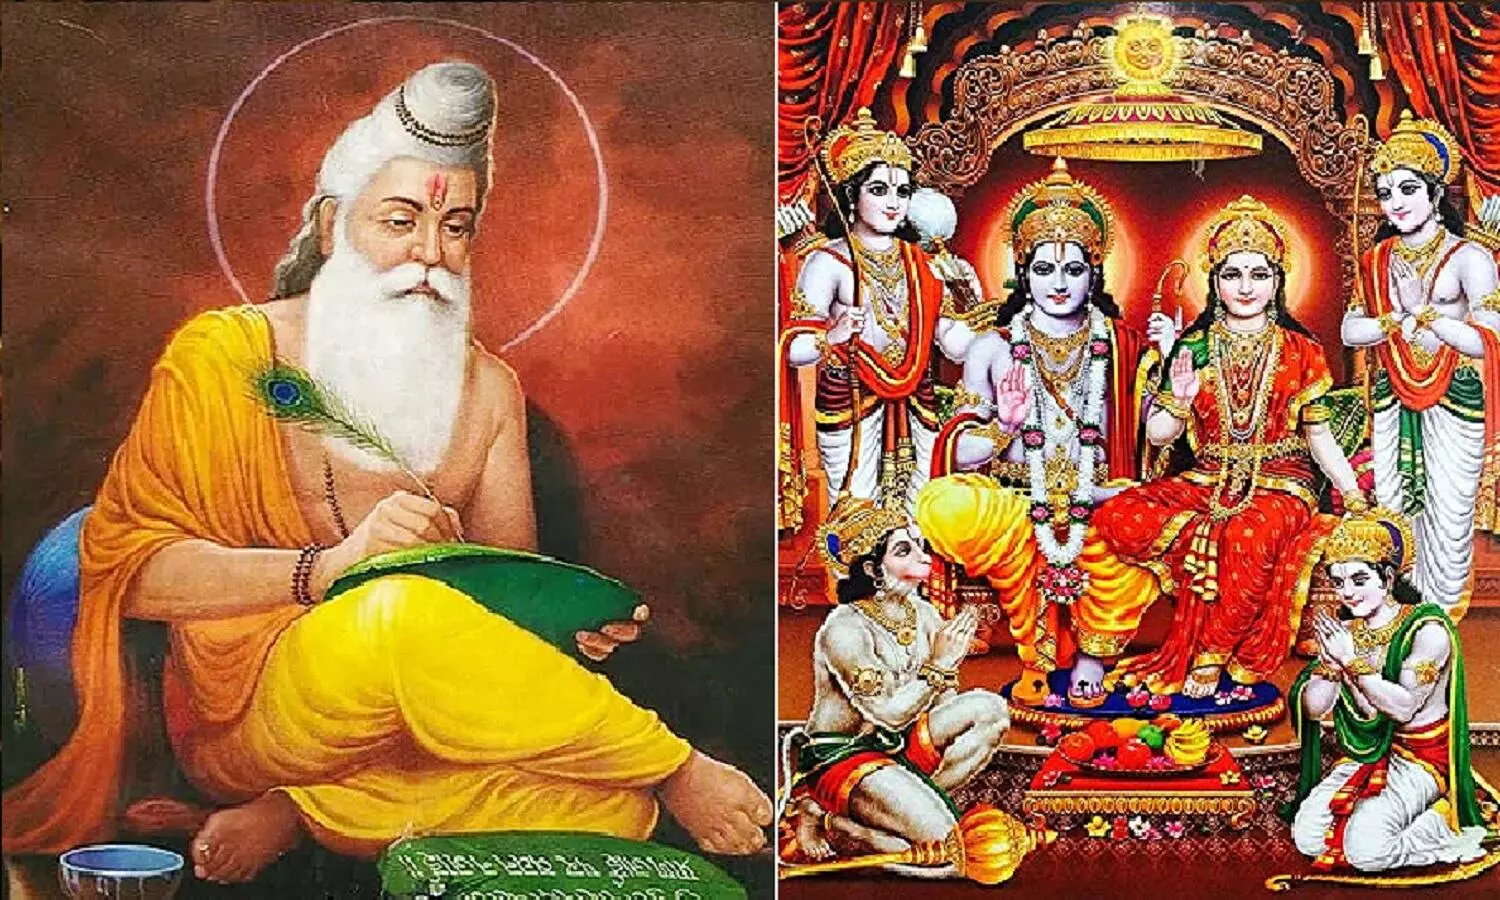 वाल्मीकि रामायण के अनुसार भगवान राम, लक्ष्मण, हनुमान और रावण कैसे दिखते थे?